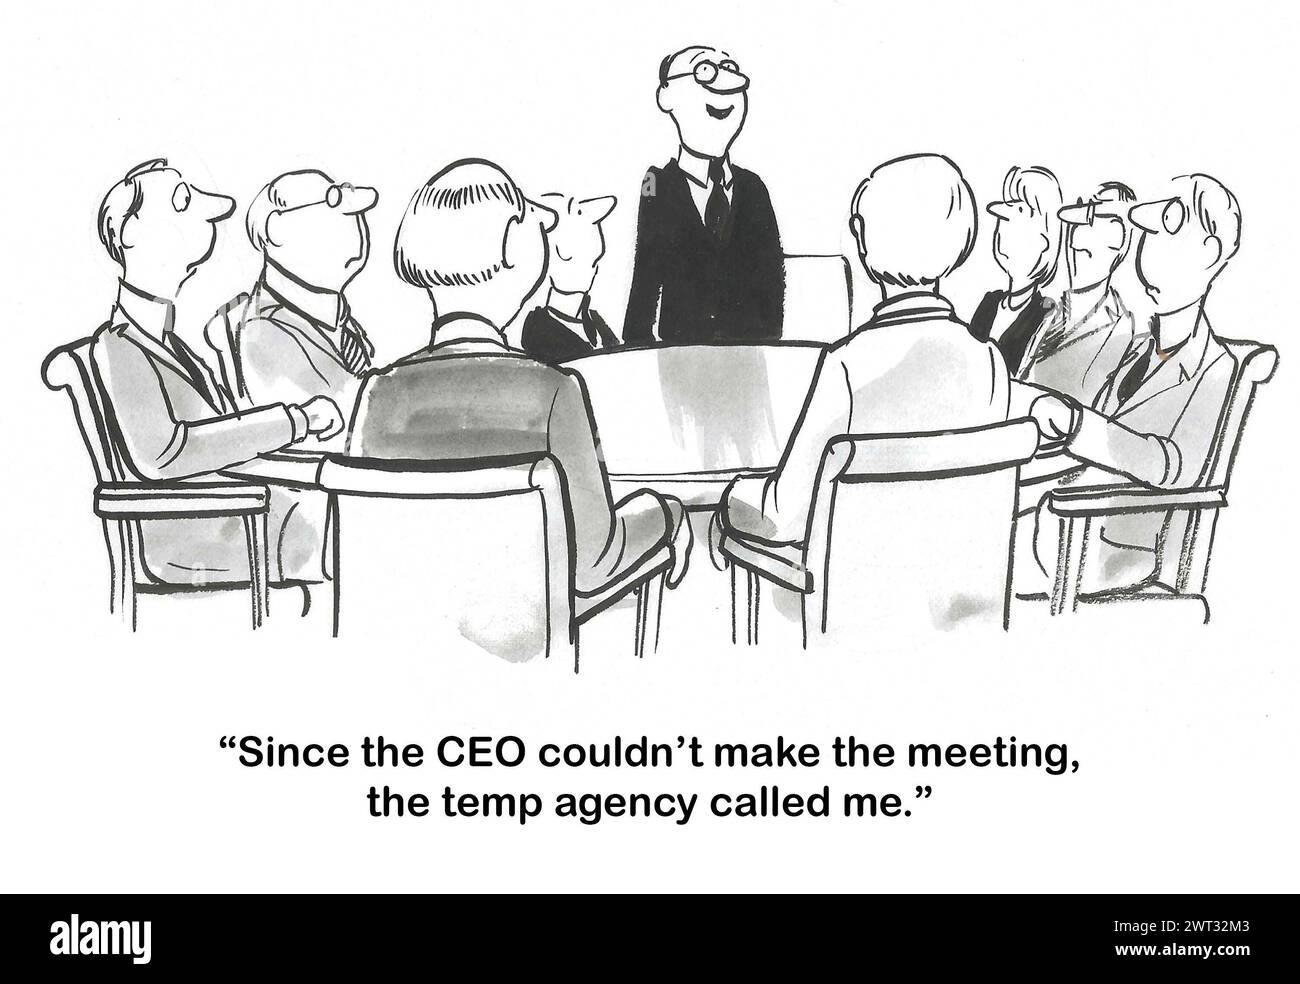 BW dessin animé d'une réunion d'affaires, le PDG ne peut pas le faire de sorte que l'agence temporaire a envoyé un PDG remplaçant. Banque D'Images